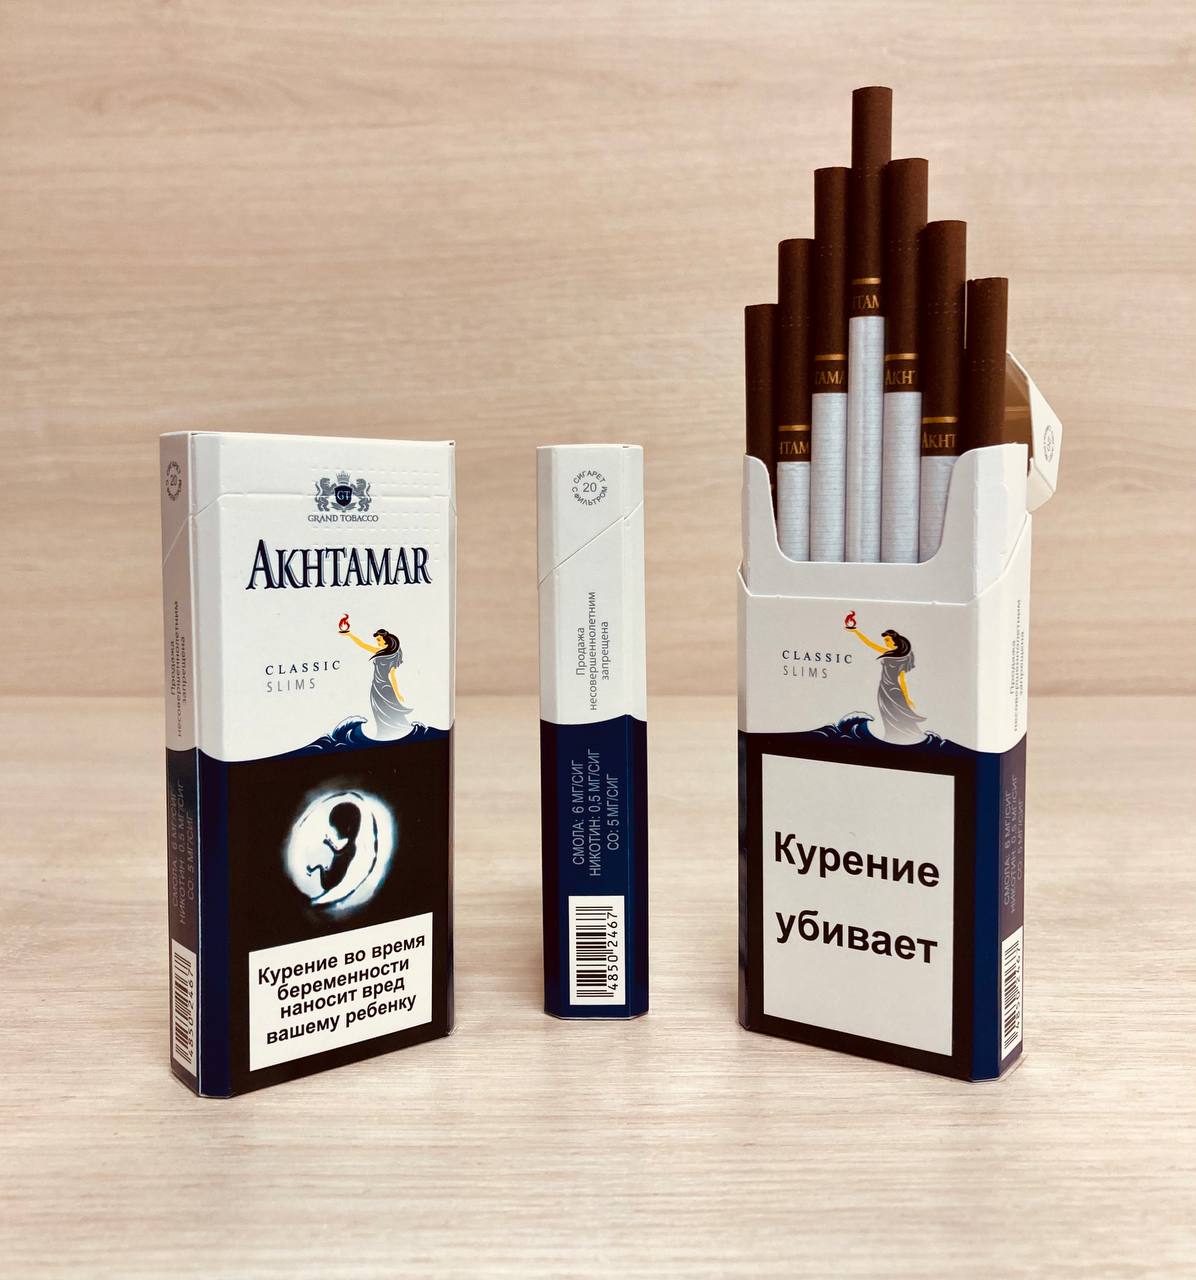 Купить армянские сигареты доставкой. Akhtamar Classic Slims. Сигареты Akhtamar Classic. Армянские сигареты Ахтамар Классик. Сигареты Классик Слимс.